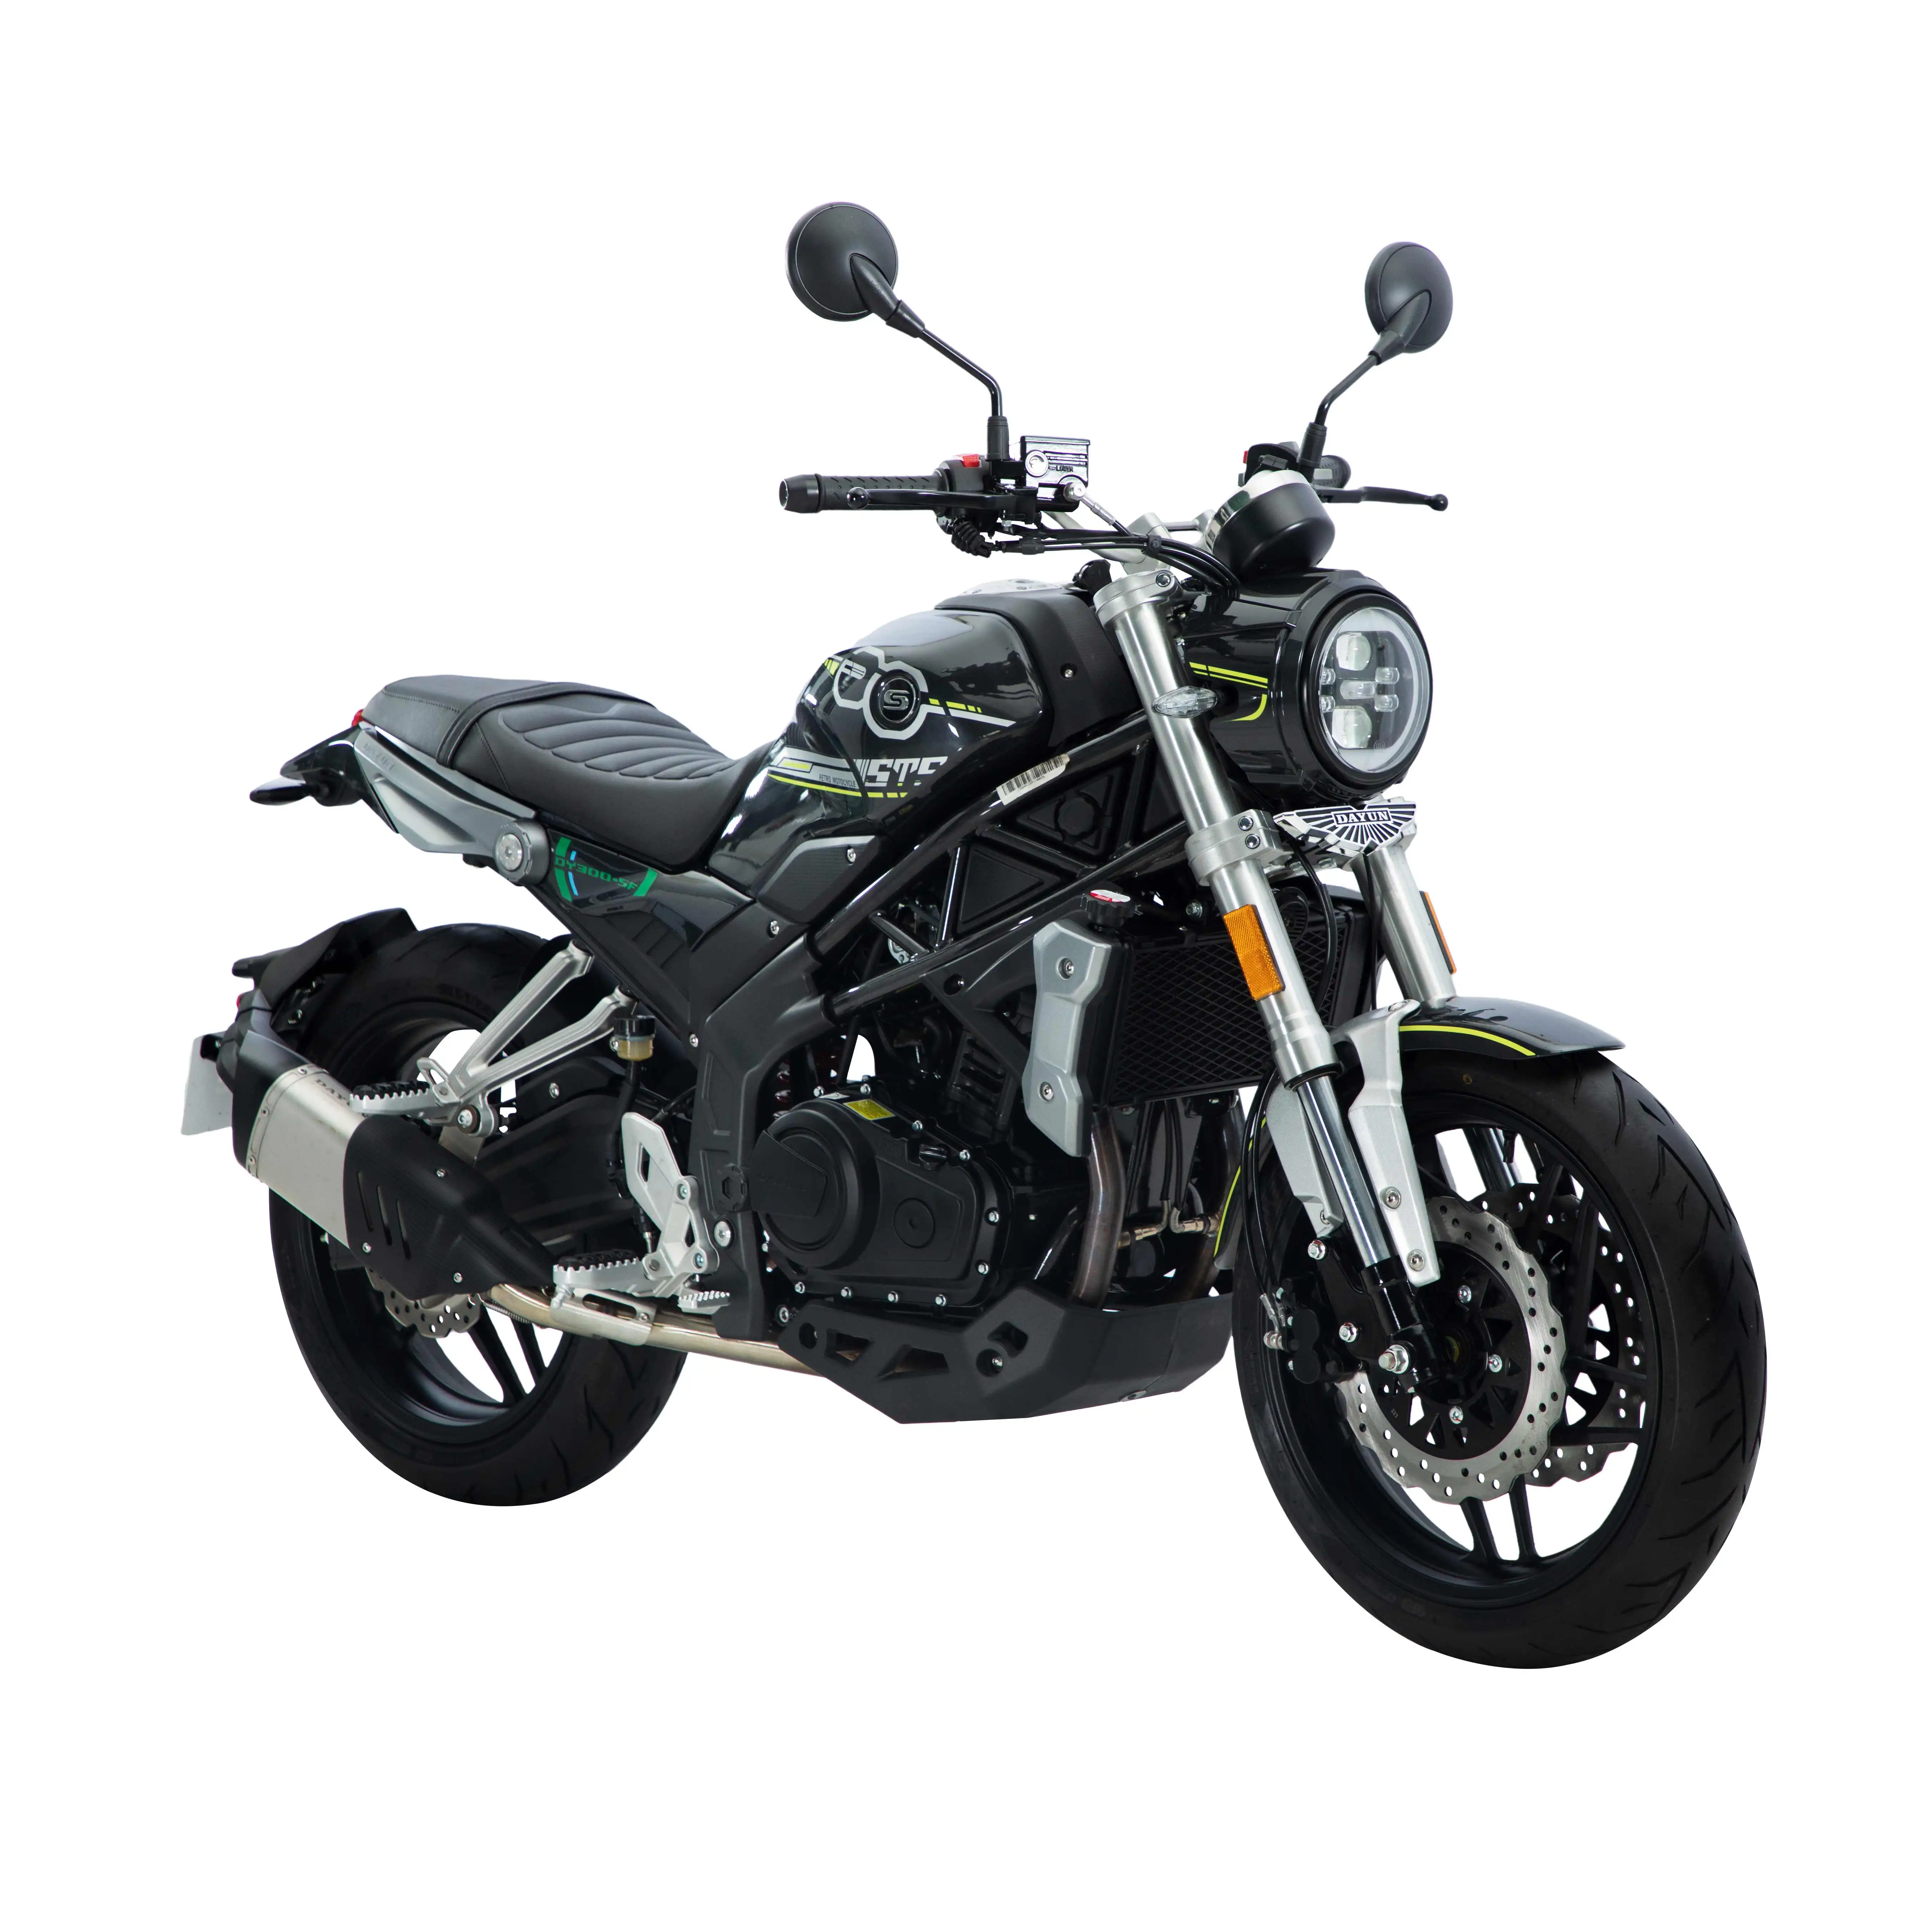 Motocicleta clásica 250cc con motor de refrigeración por agua de doble cilindro